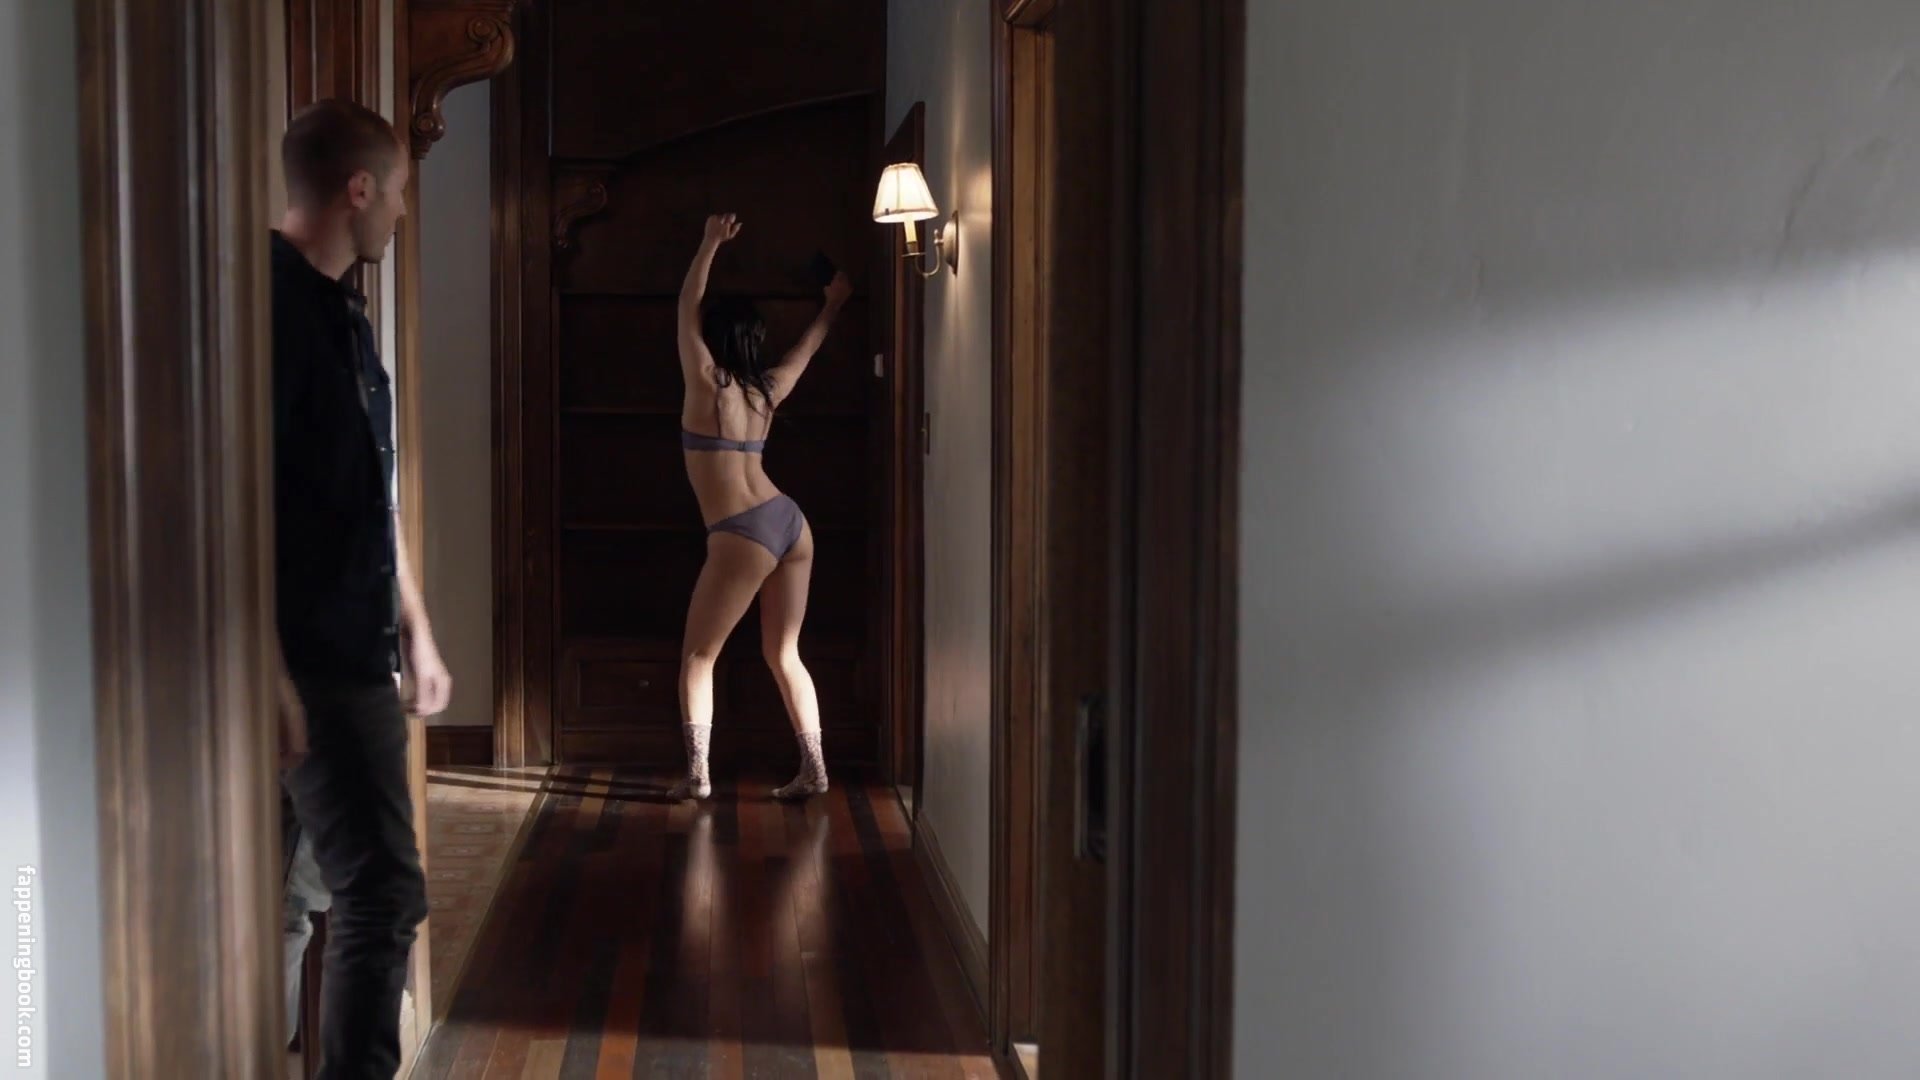 Emmy Rossum Nude.